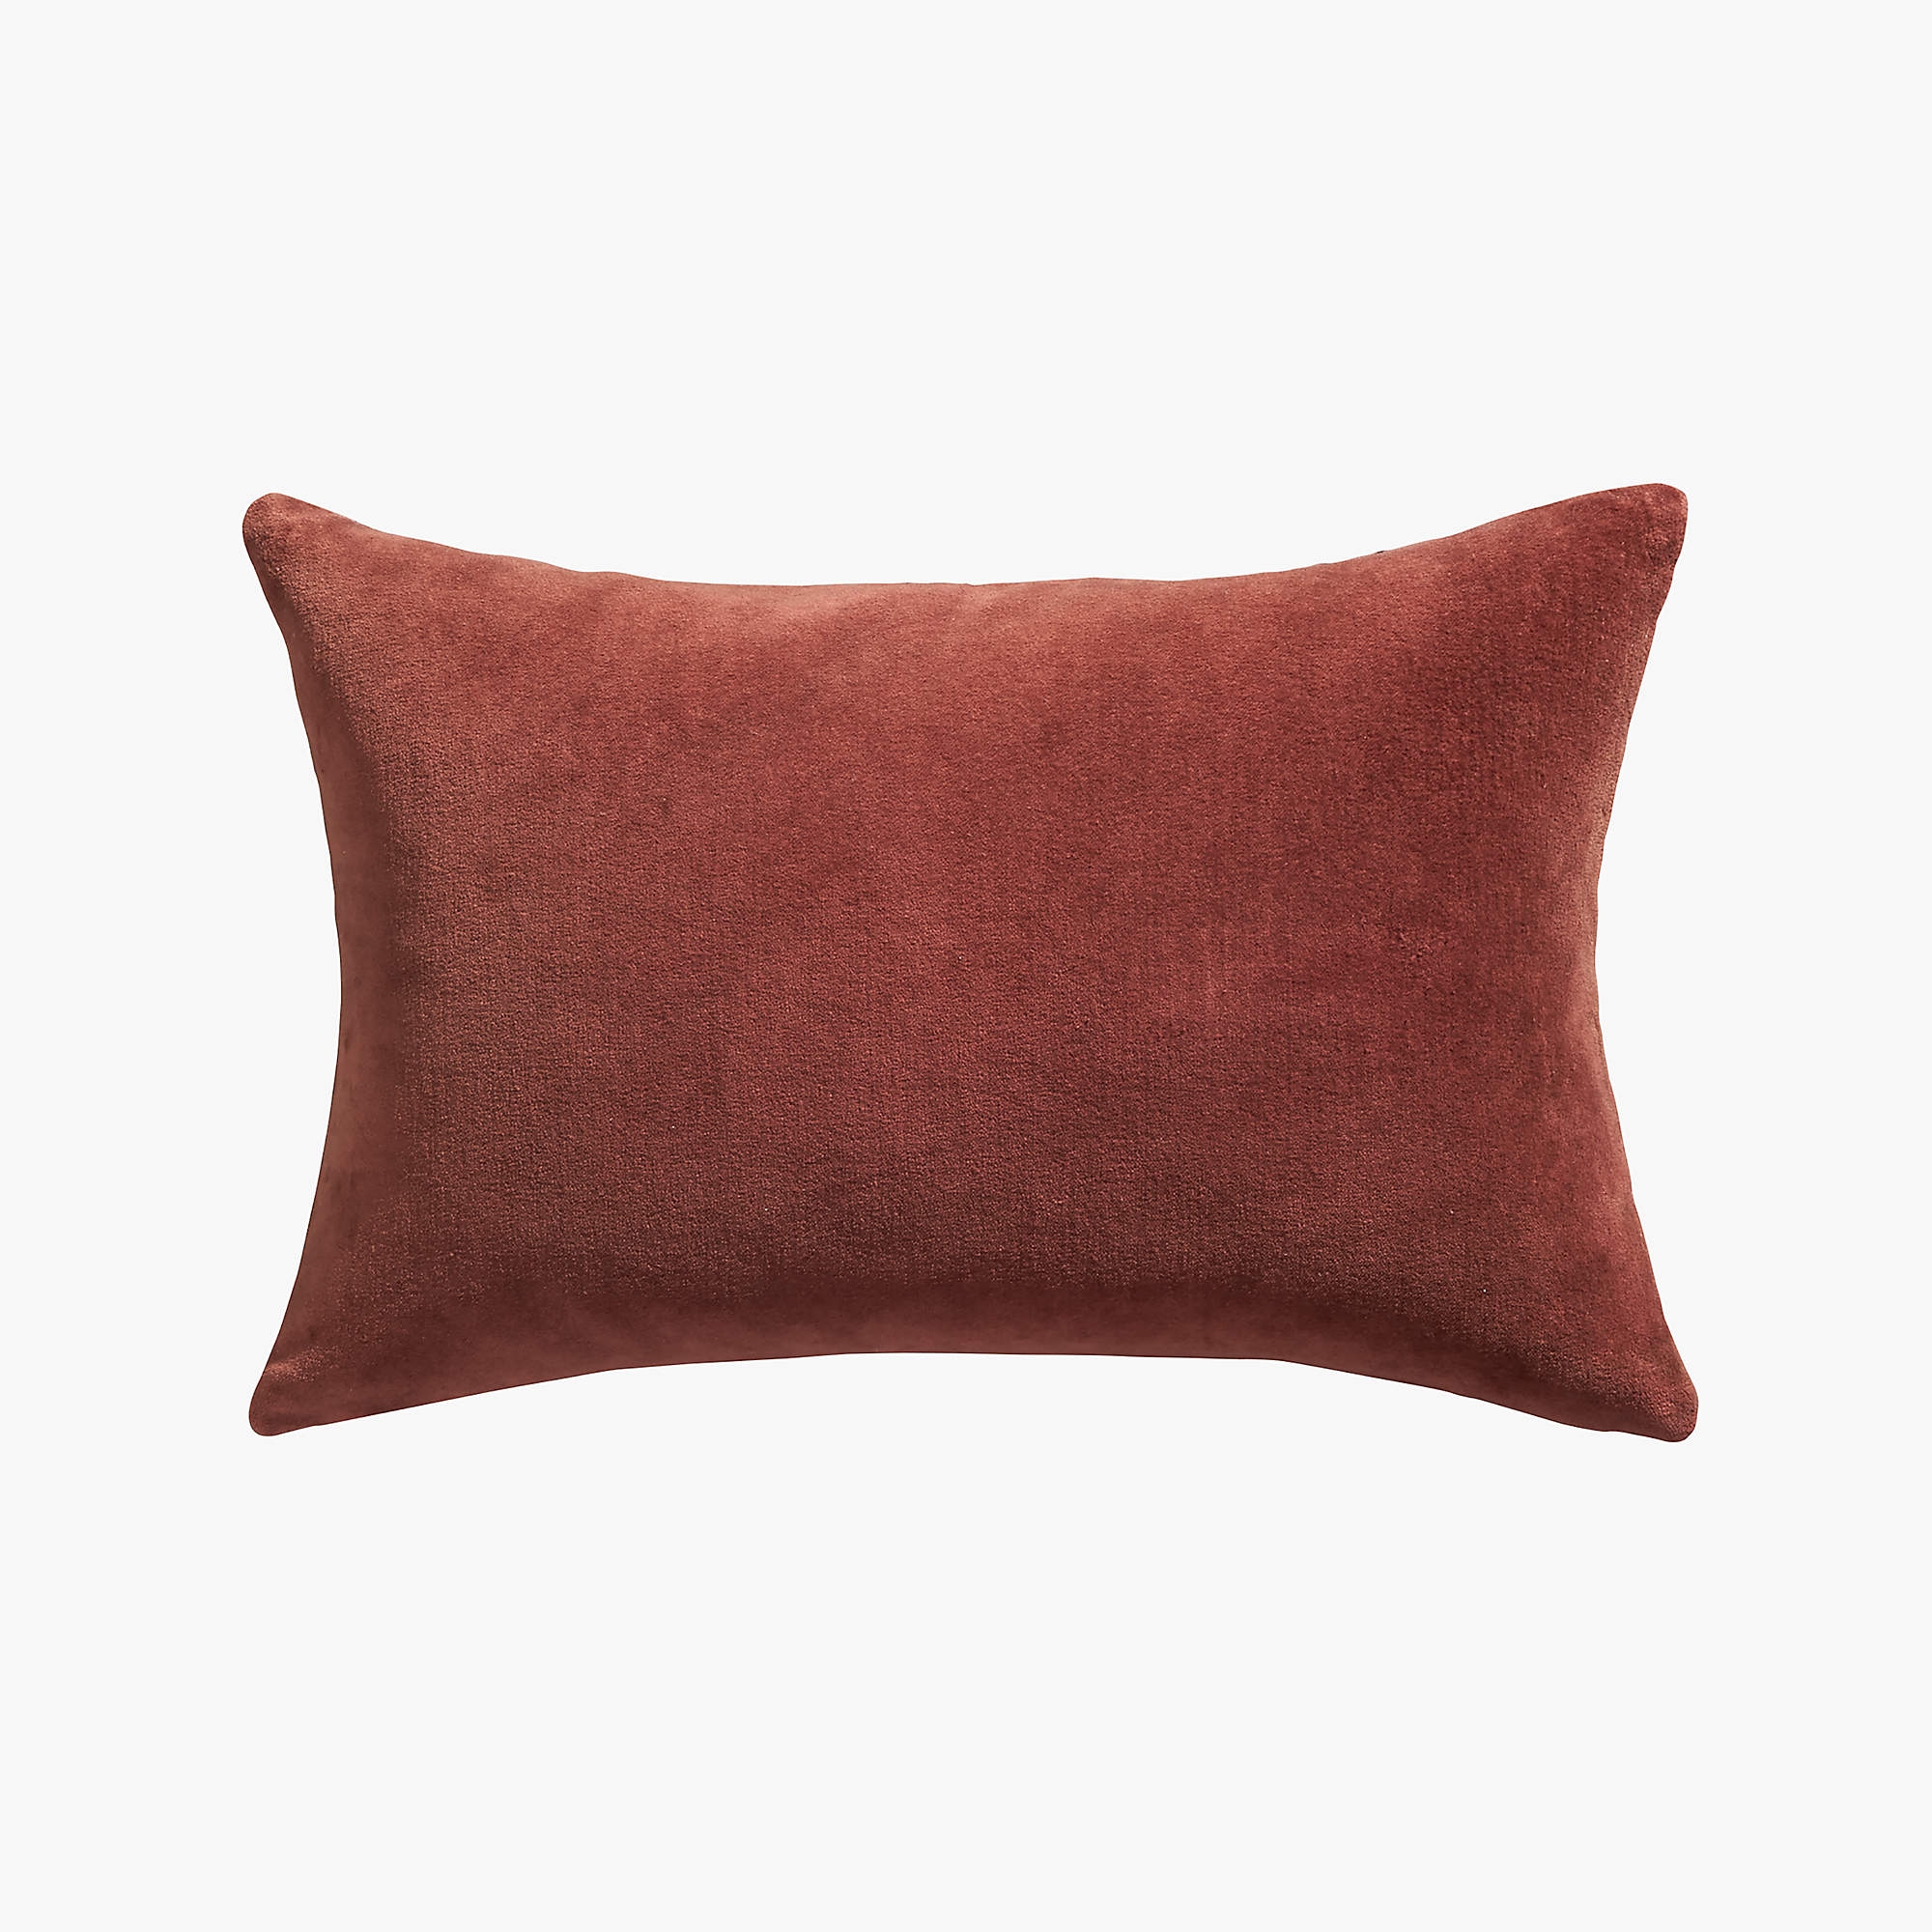 Pata Lumbar Pillow, Feather-Down Insert, 18" x 12" - Image 1